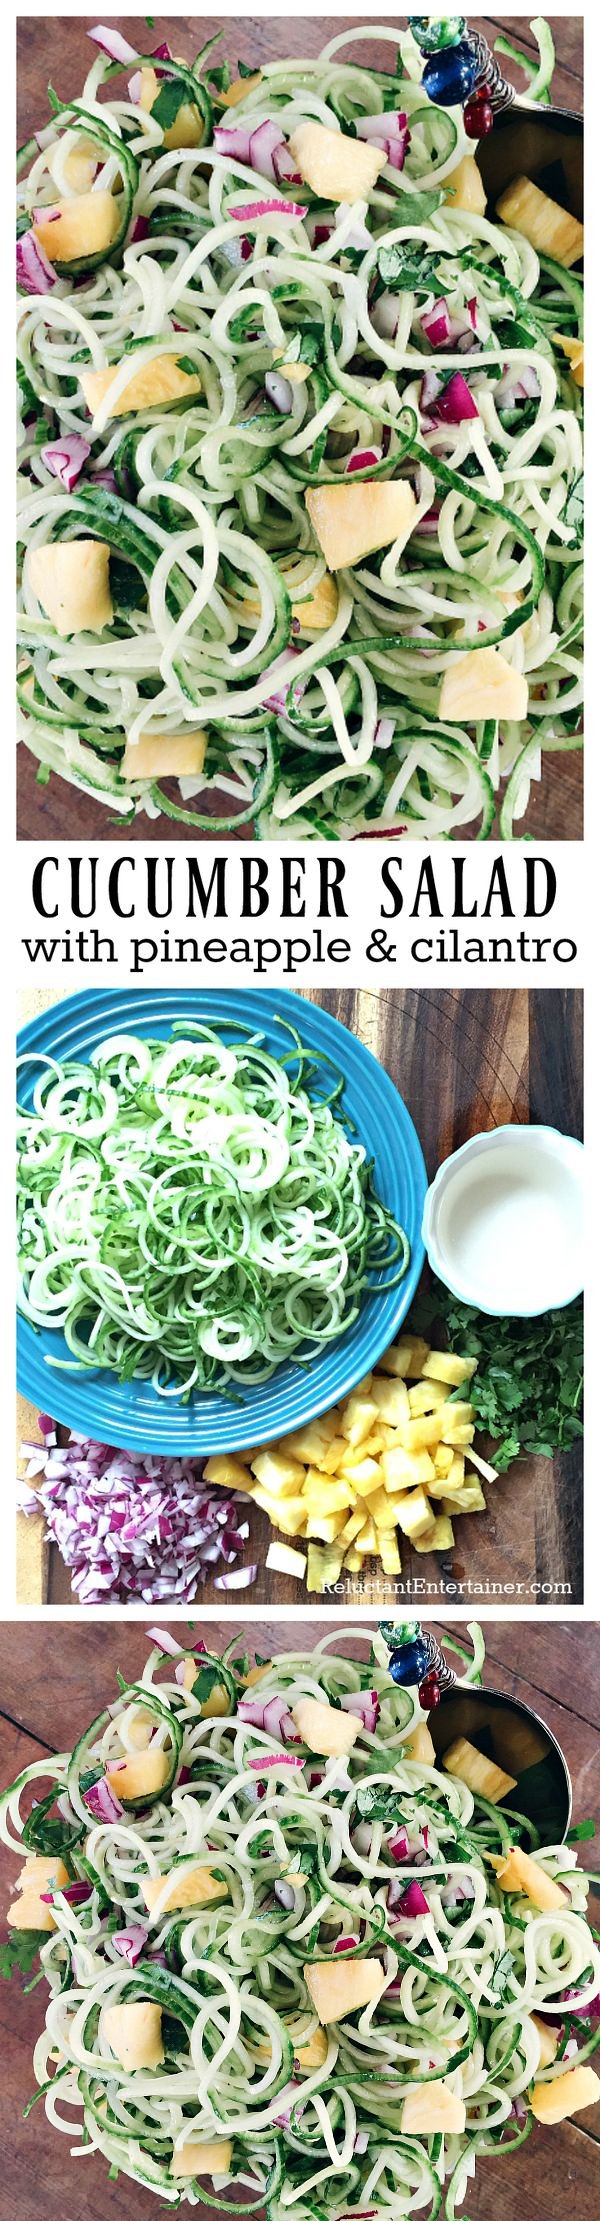 Cucumber Salad Recipe with Pineapple & Cilantro